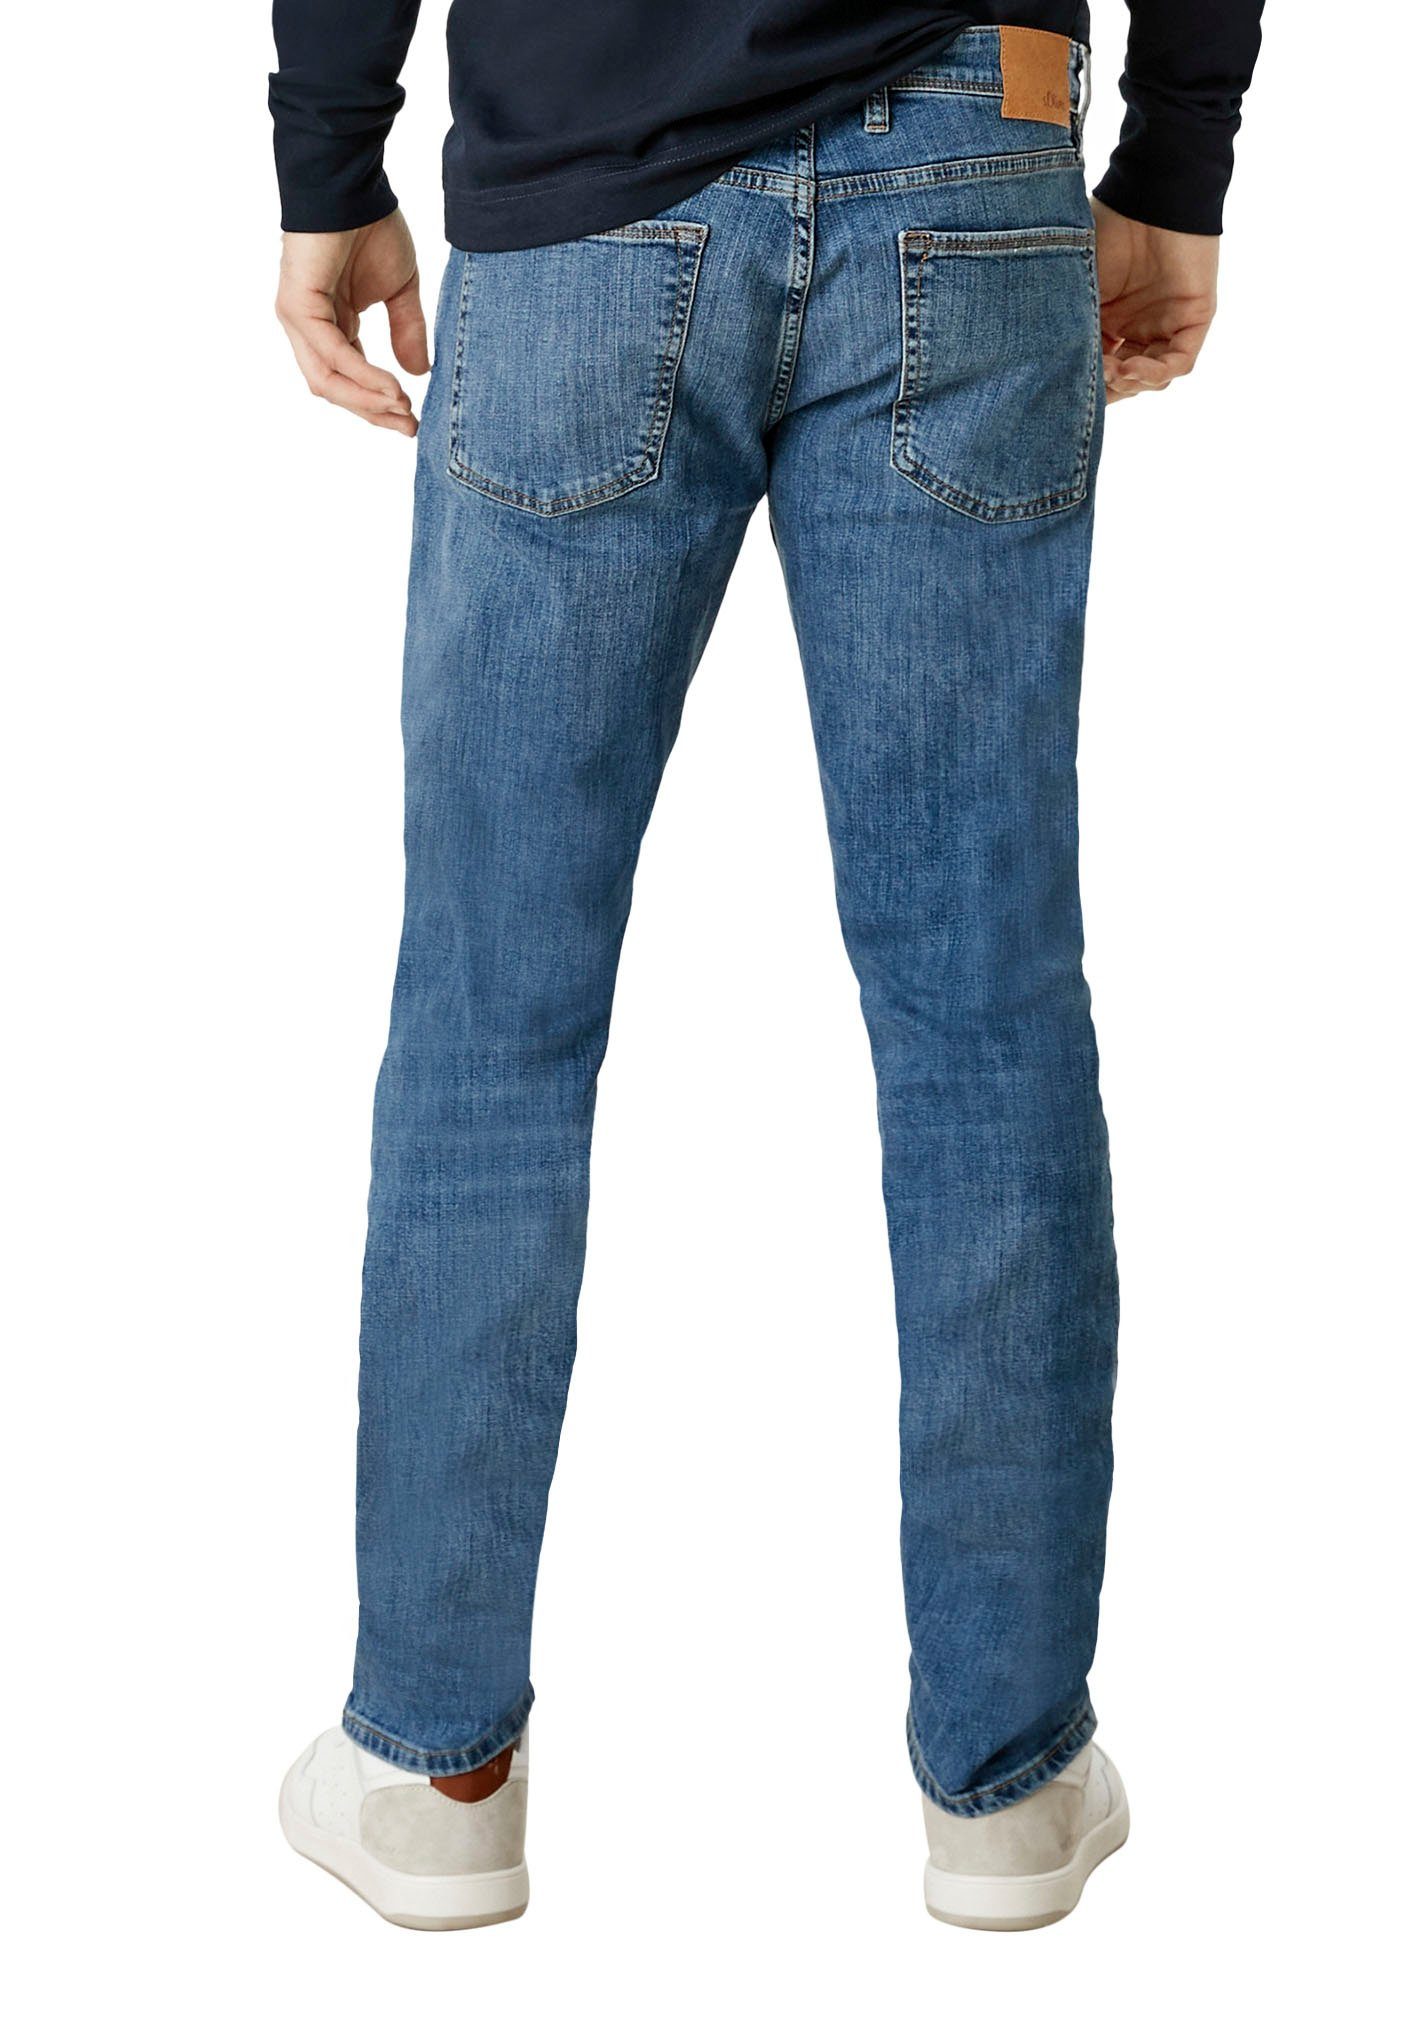 s.Oliver 5-Pocket-Jeans Waschung royalblau mit authentischer